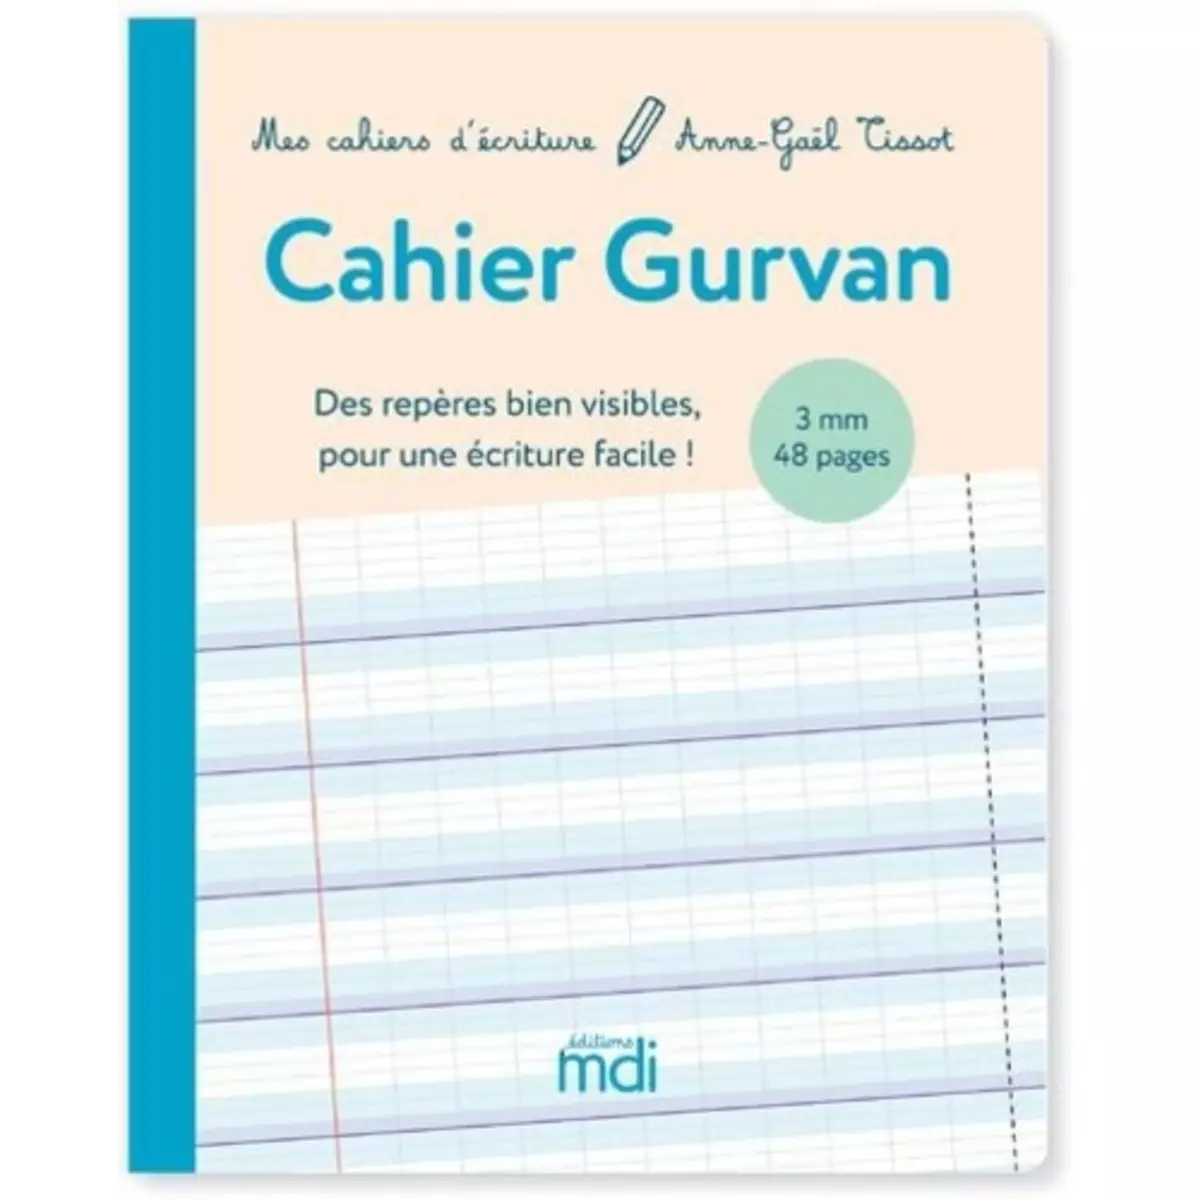  CAHIER GURVAN 3 MM A LA FRANCAISE GS - CP CYCLES 1 ET 2. CAHIER D'ACTIVITES VIERGE, EDITION 2021, Tissot Anne-Gaël